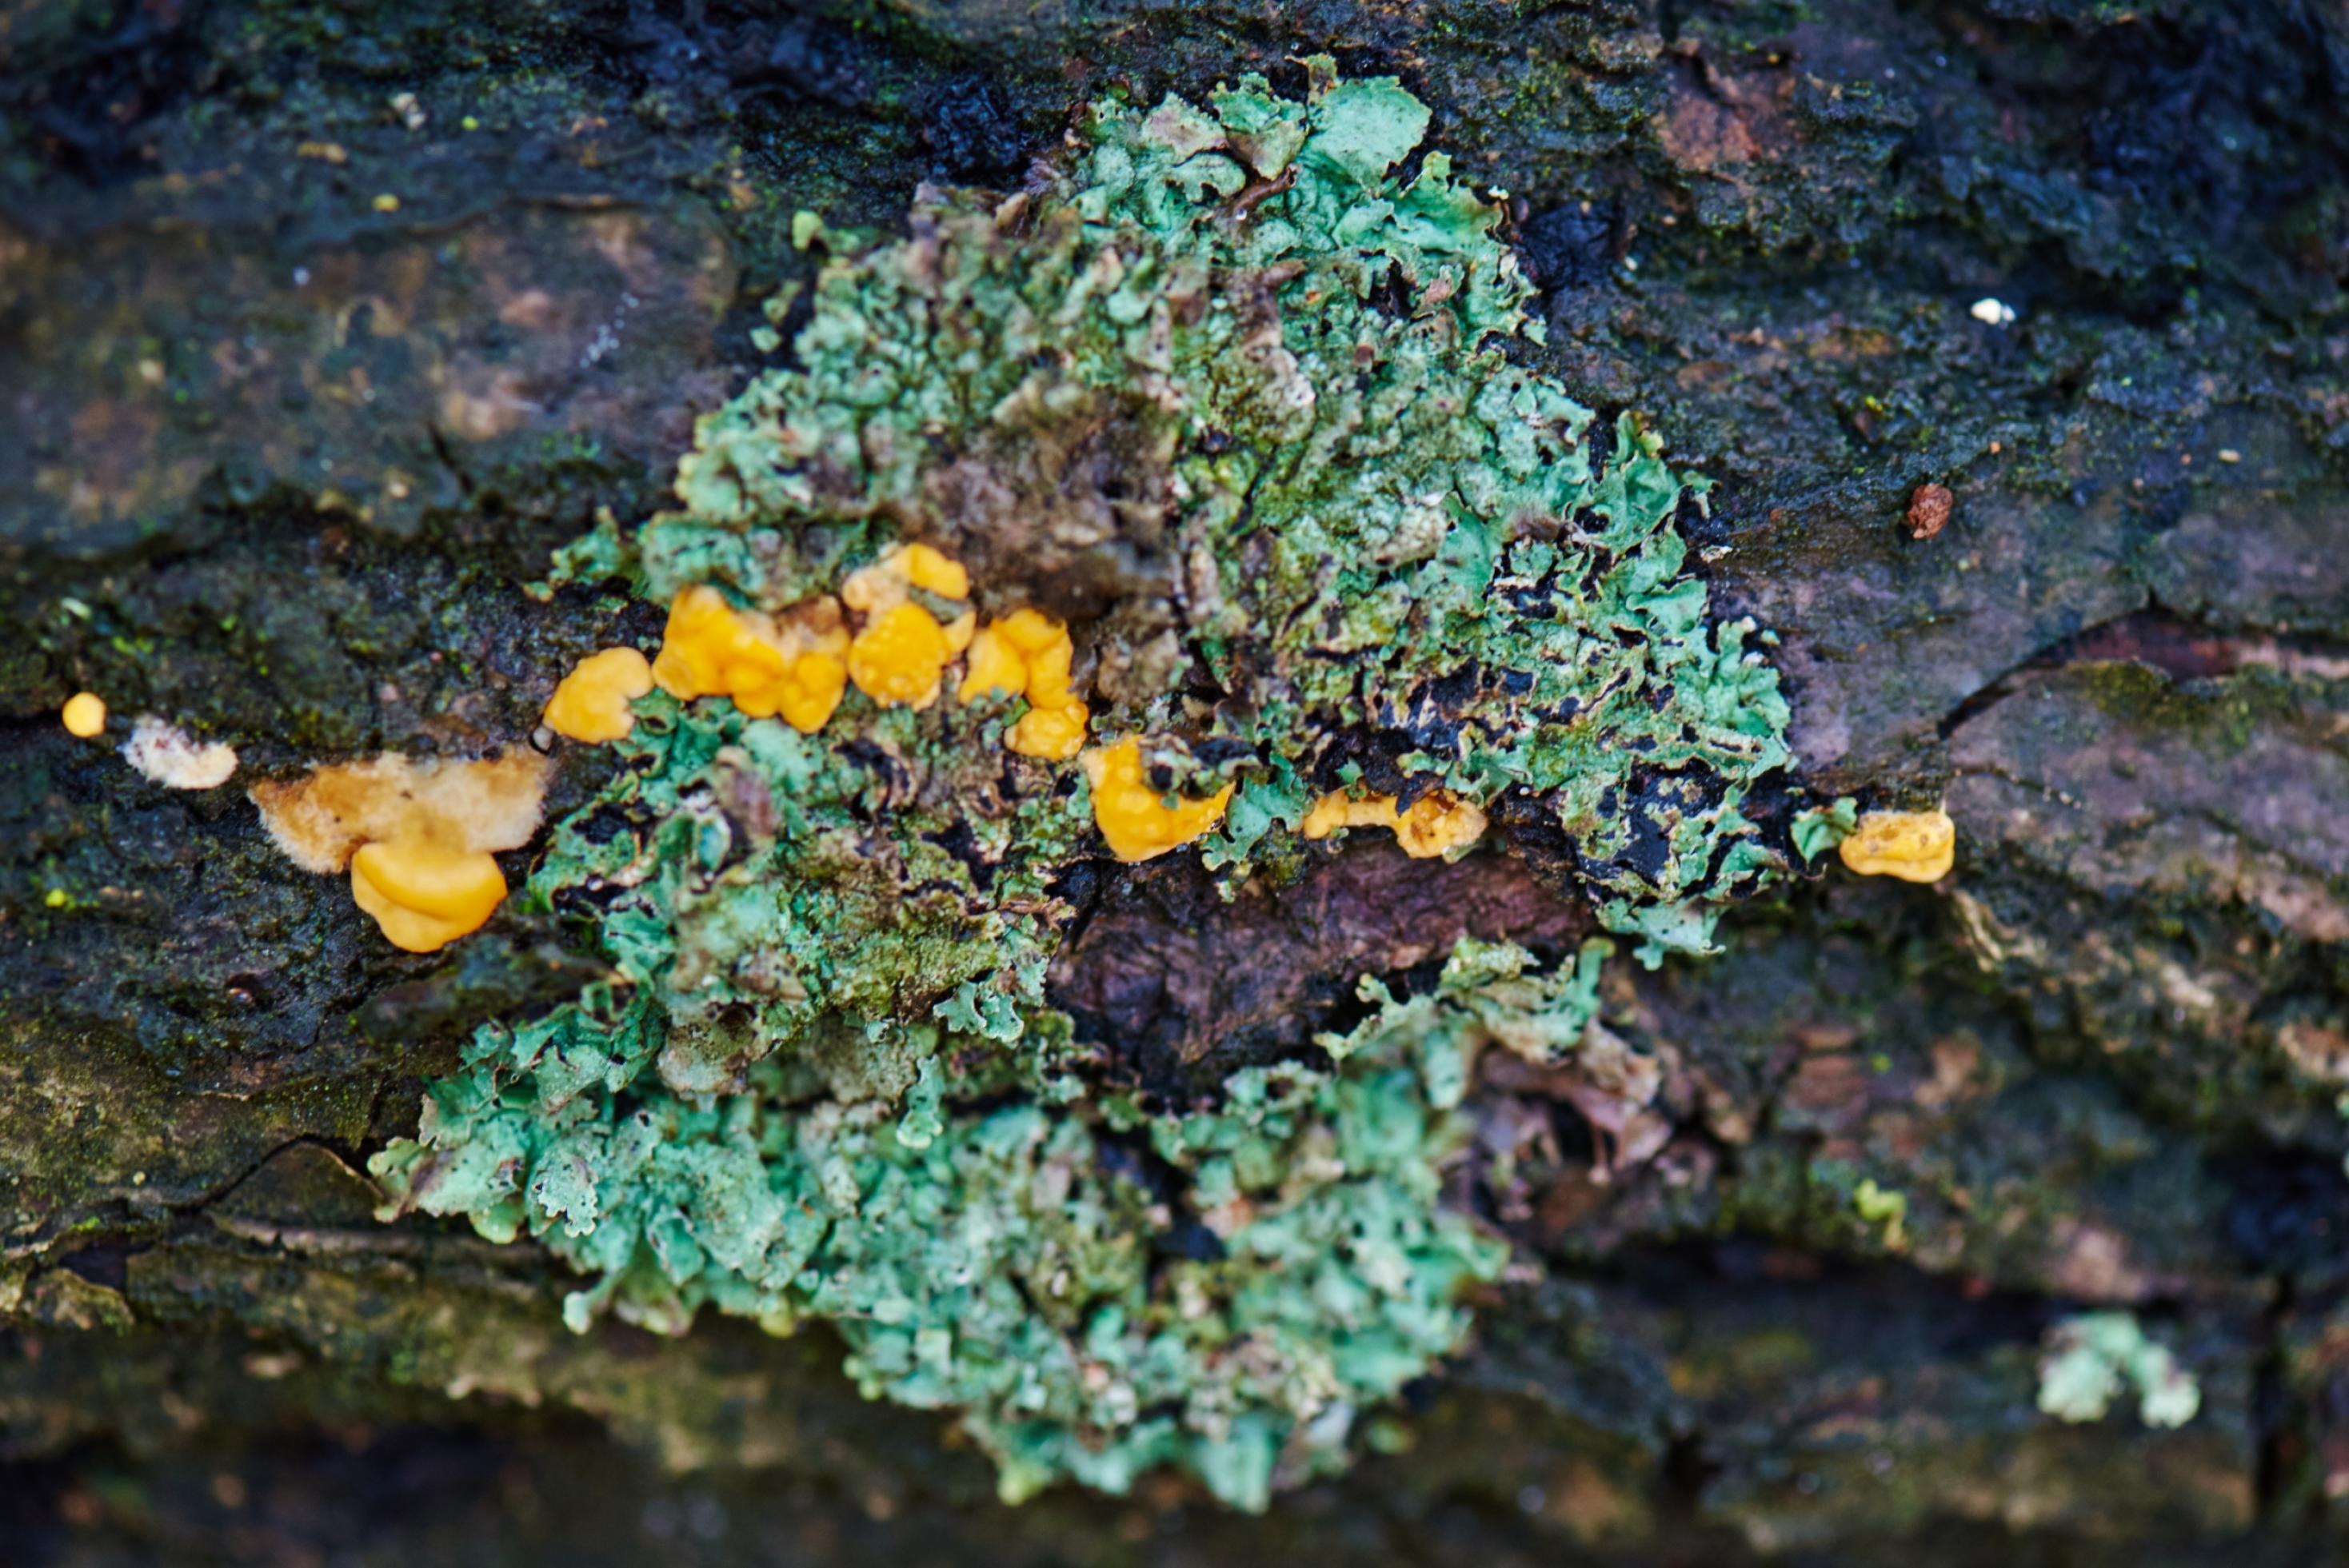 Eine feine Linie millimetergroßer goldgelber Pilze zieht sich durch eine kreisförmige blaugrüne Flechte, die einen absterbenden Baumstamm besiedelt hat